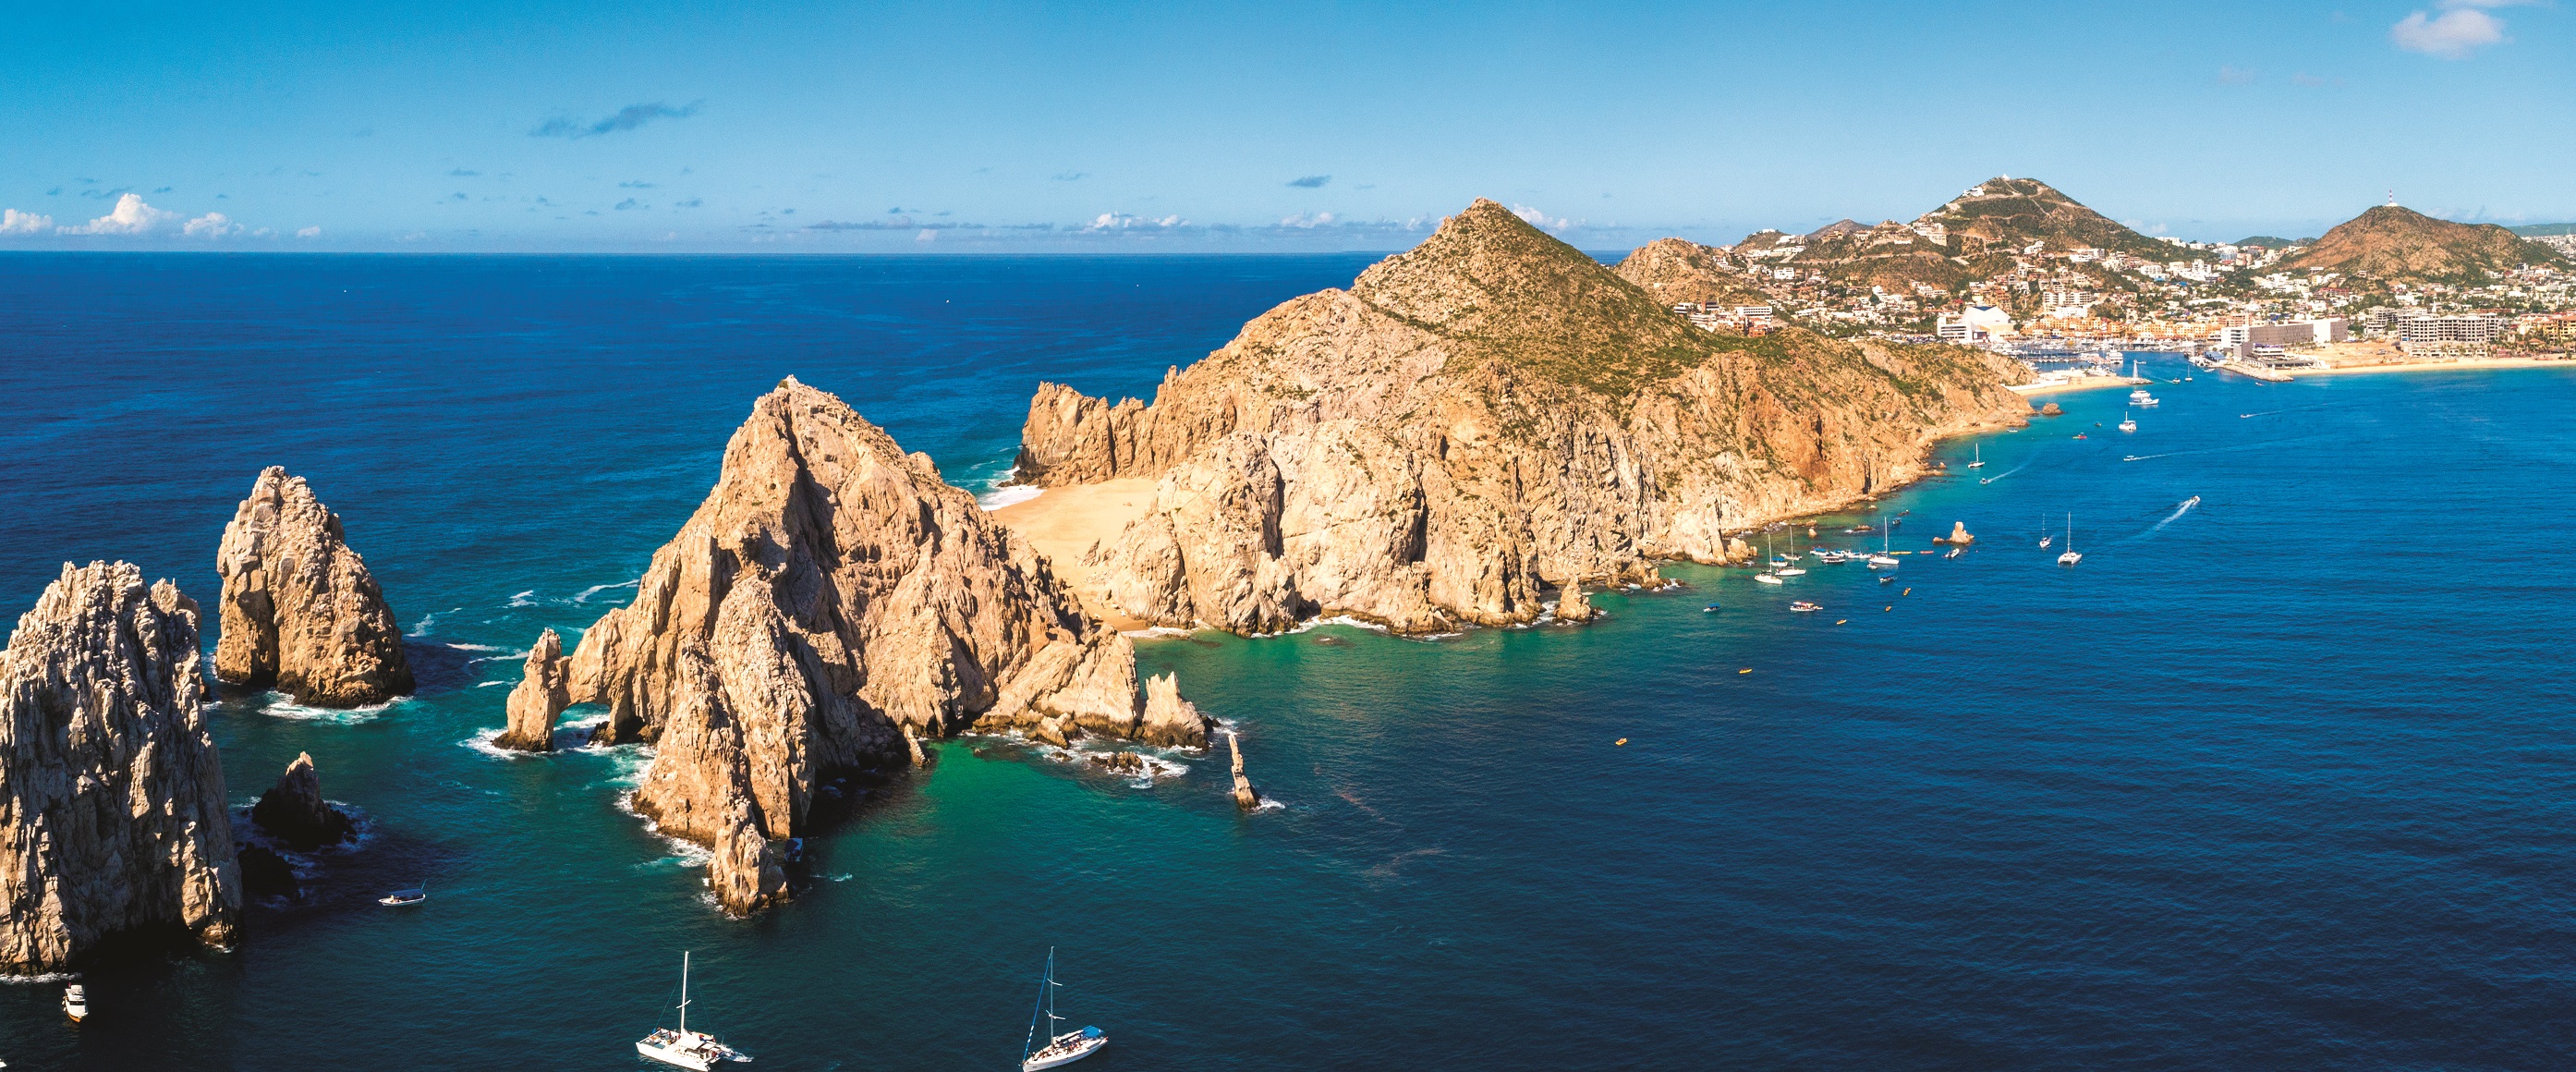 Vakpersbericht TUI Nederland - Los Cabos, nieuwe TUI-bestemming met  AeroMexico